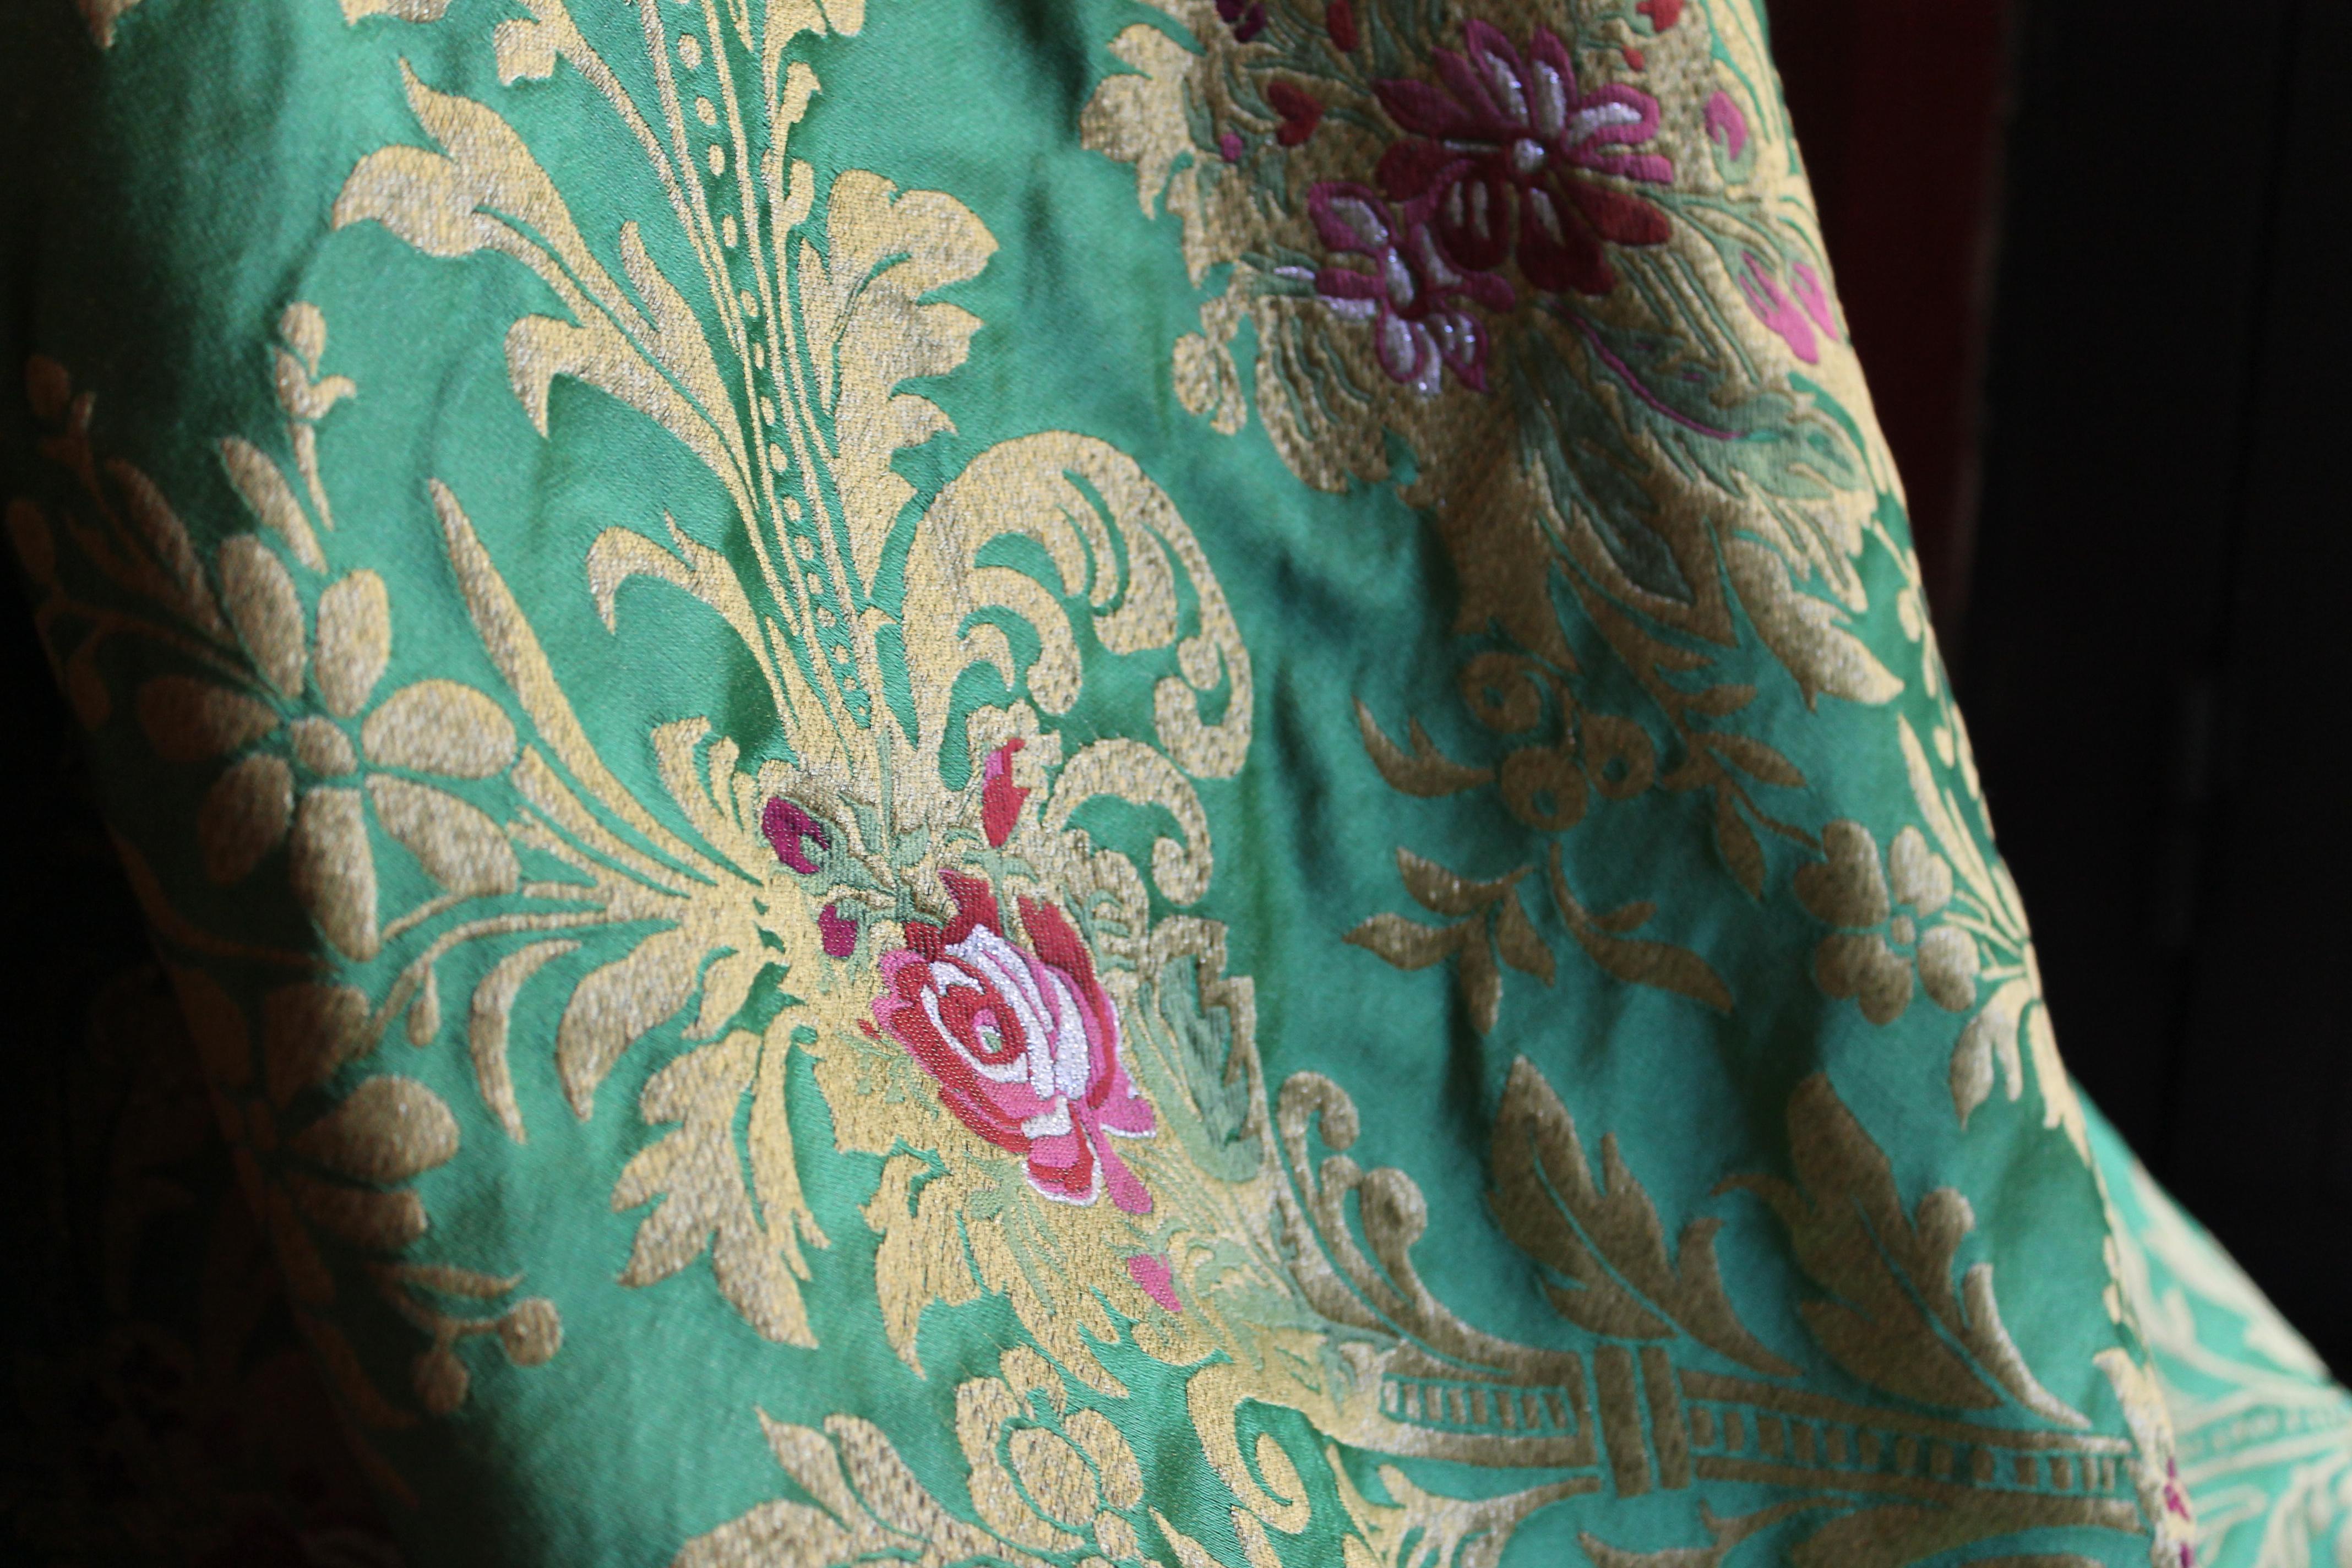 Un magnifique rouleau de tissu italien à motifs de roses 100% MADE IN ITALY il y a 20 mt. disponibles et prêts à être expédiés en ce moment. Ce tissu a une largeur de 140 cm. Une remise spéciale sera appliquée en cas d'achat d'un rouleau entier de